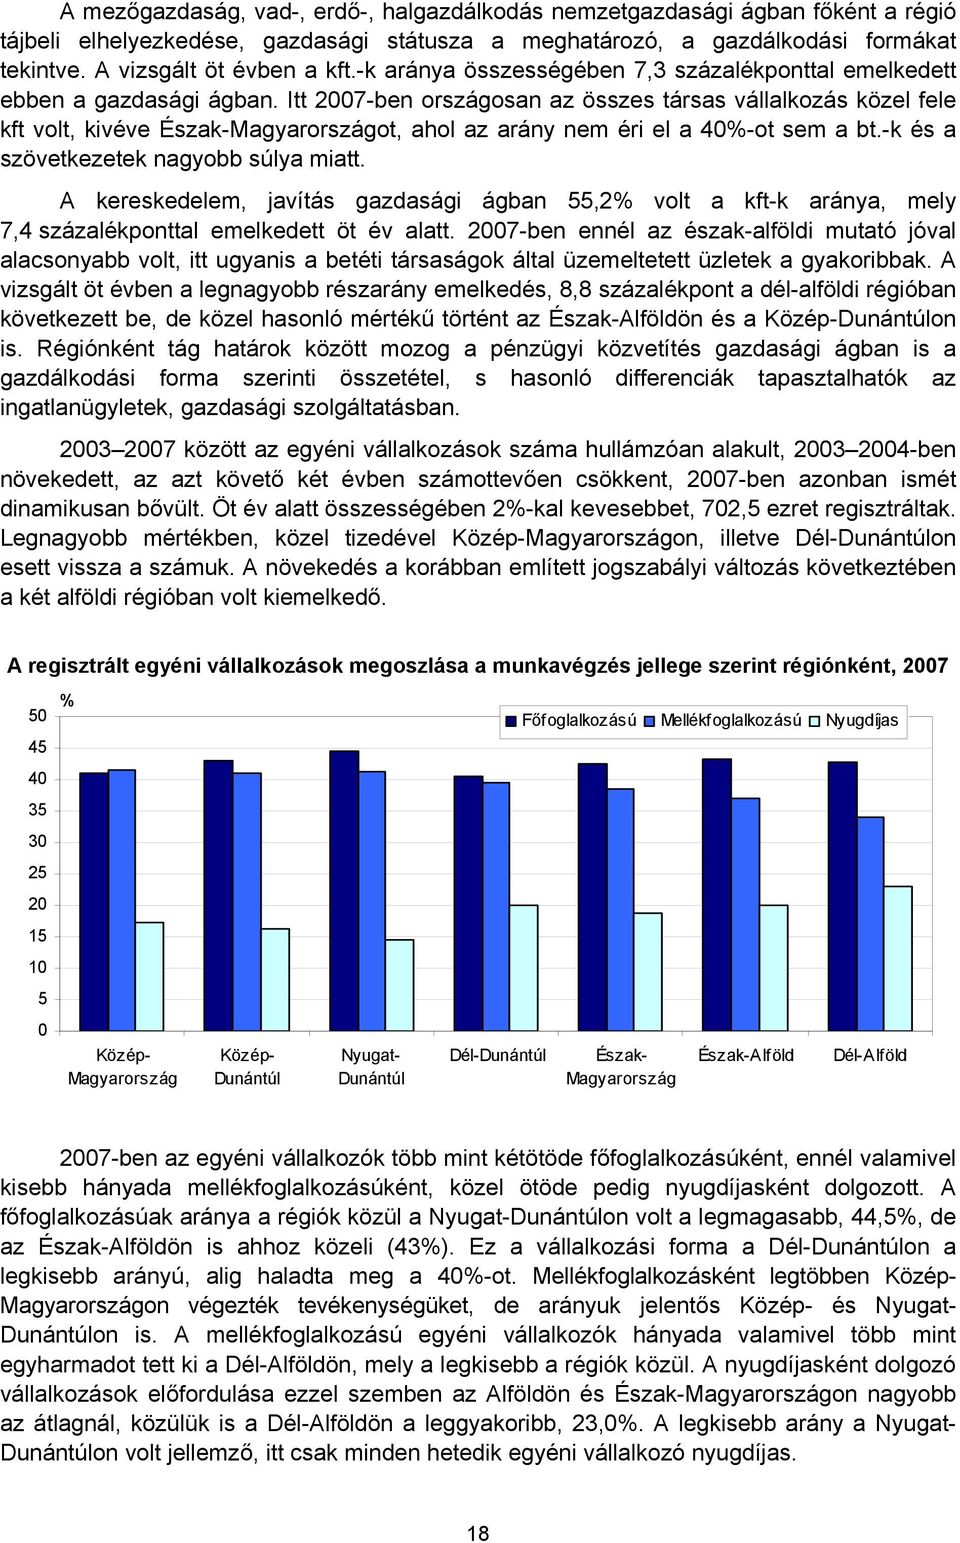 Itt 2007-ben országosan az összes társas vállalkozás közel fele kft volt, kivéve Észak-Magyarországot, ahol az arány nem éri el a 40%-ot sem a bt.-k és a szövetkezetek nagyobb súlya miatt.